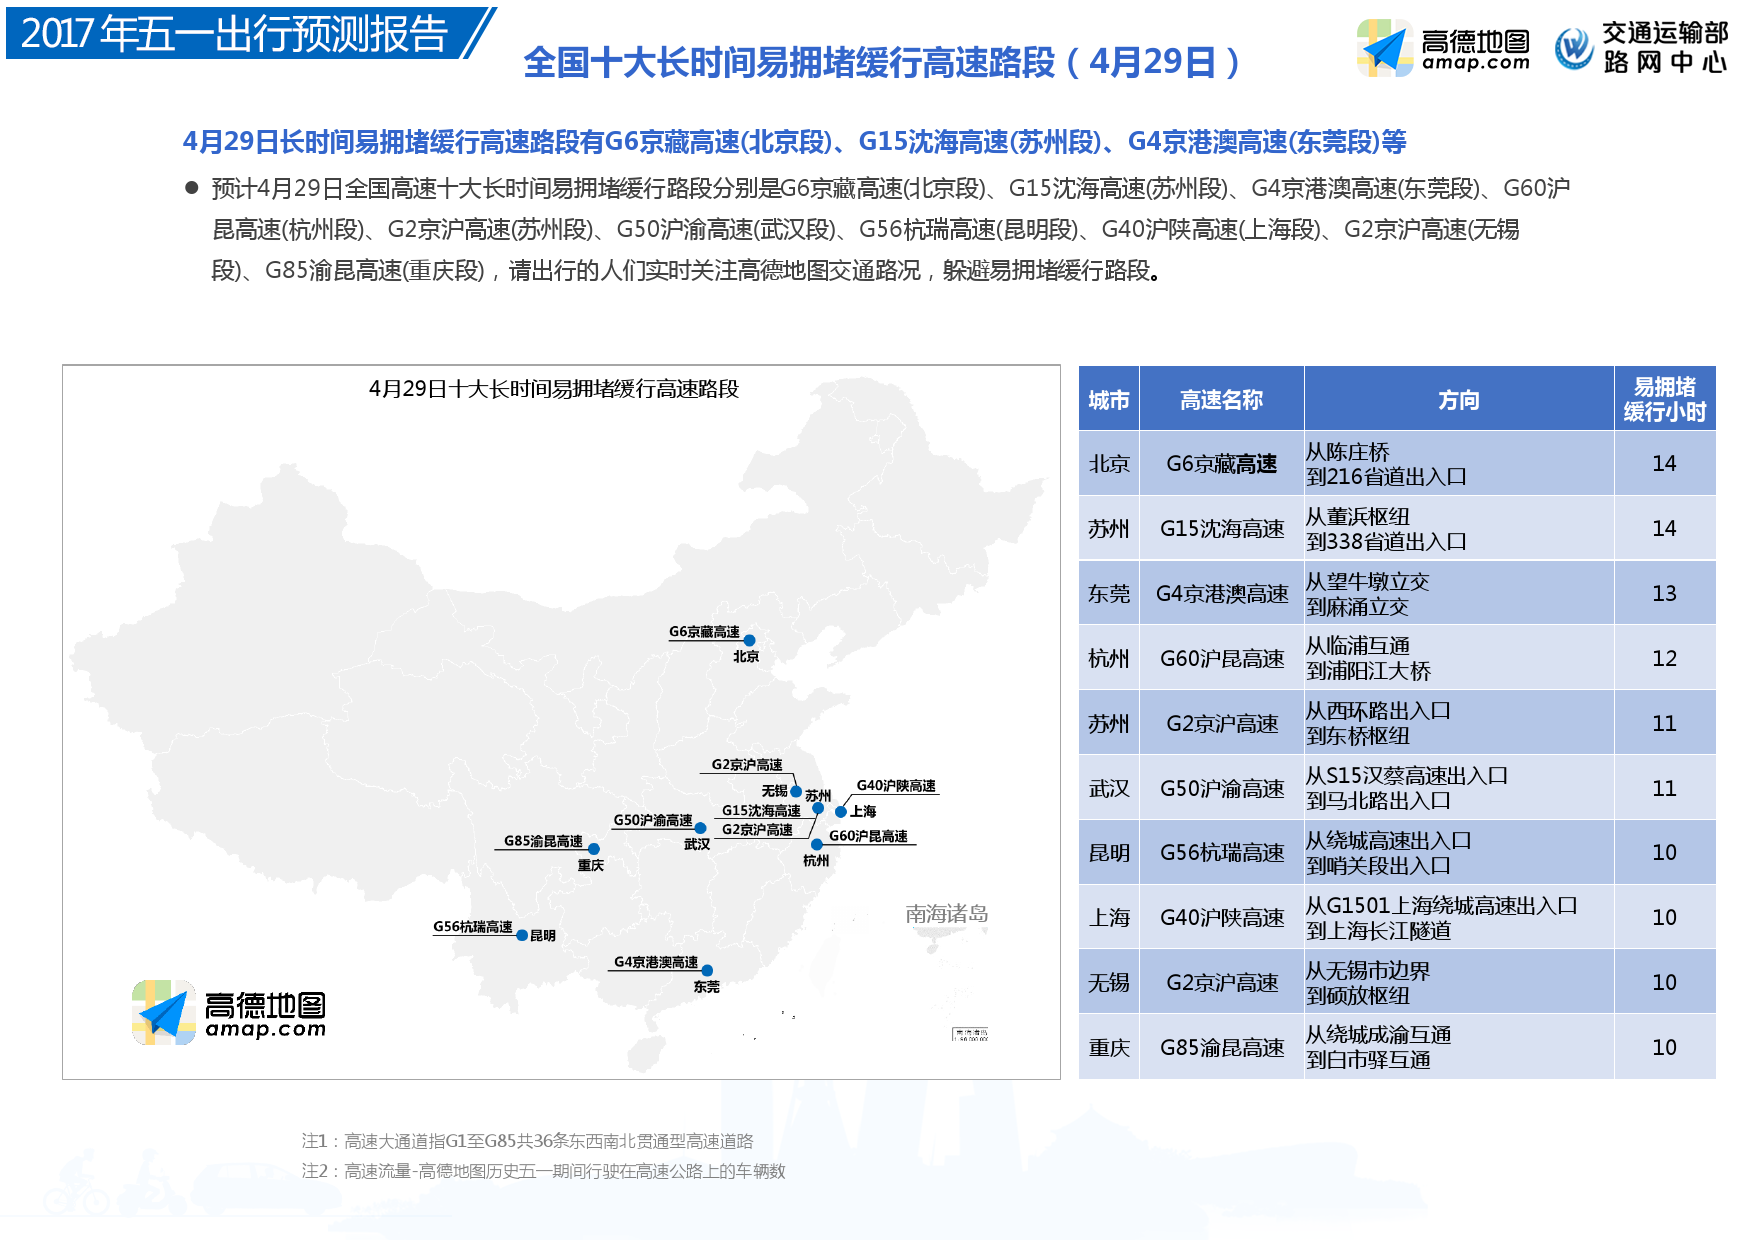 高德地图五一出行预测数据报告:东莞深圳北京